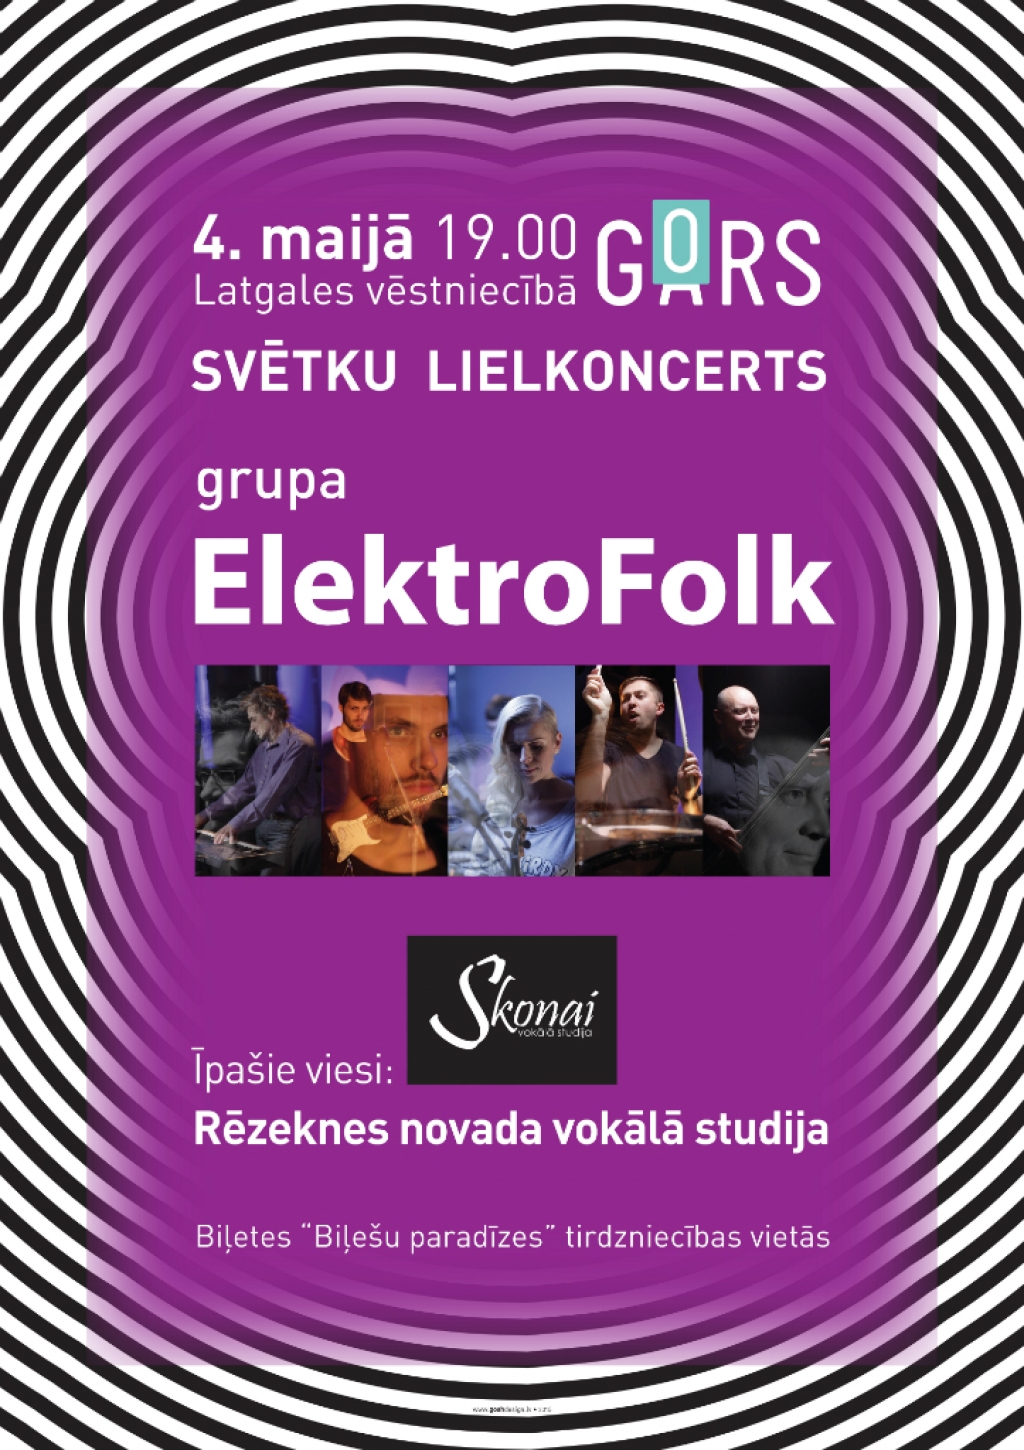 Grupa ElektroFolk Latvijas neatkarības atjaunošanas dienā  koncertēs Latgales vēstniecībā GORS